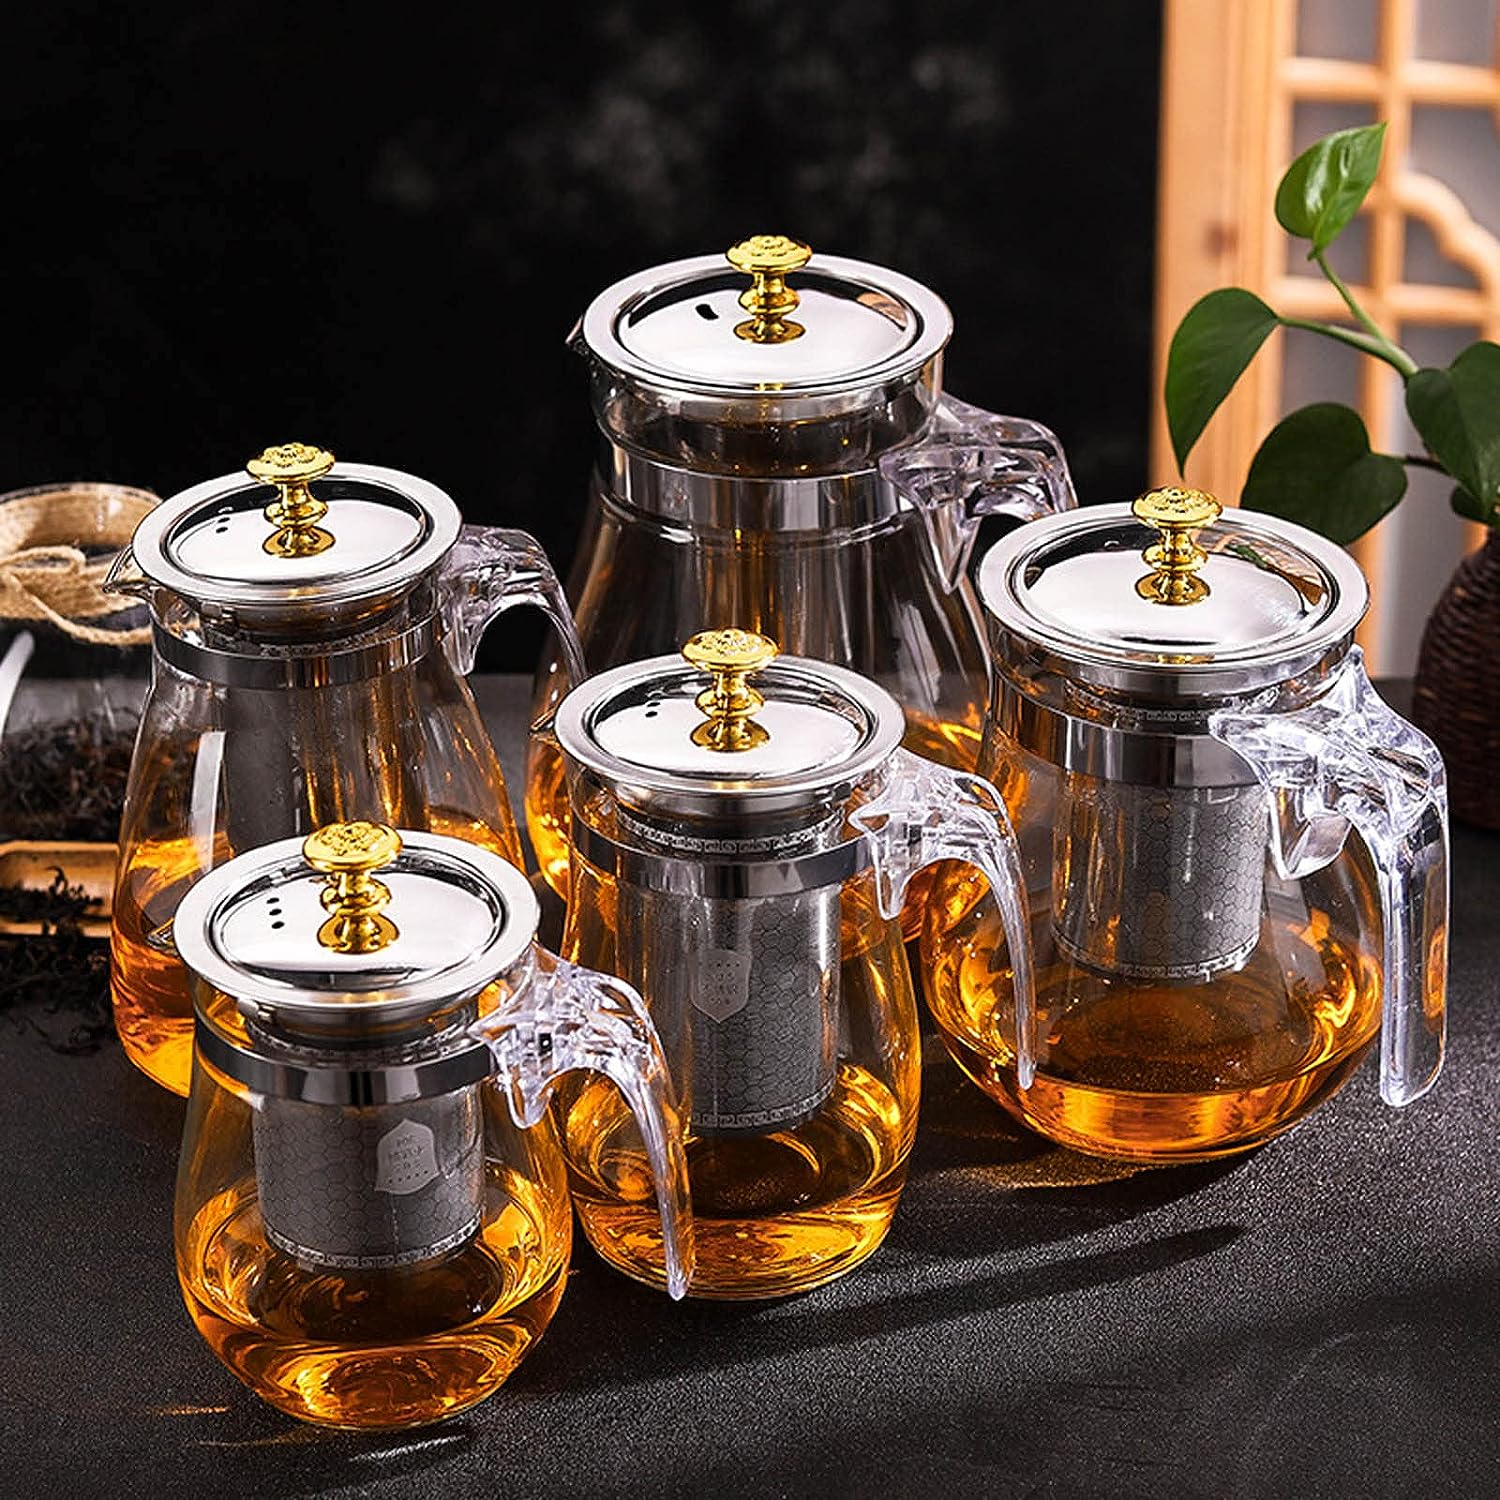 La Tetera Multifuncional: Tu compañera perfecta para preparar té, café y otras infusiones, sin importar si las prefieres frías o calientes.